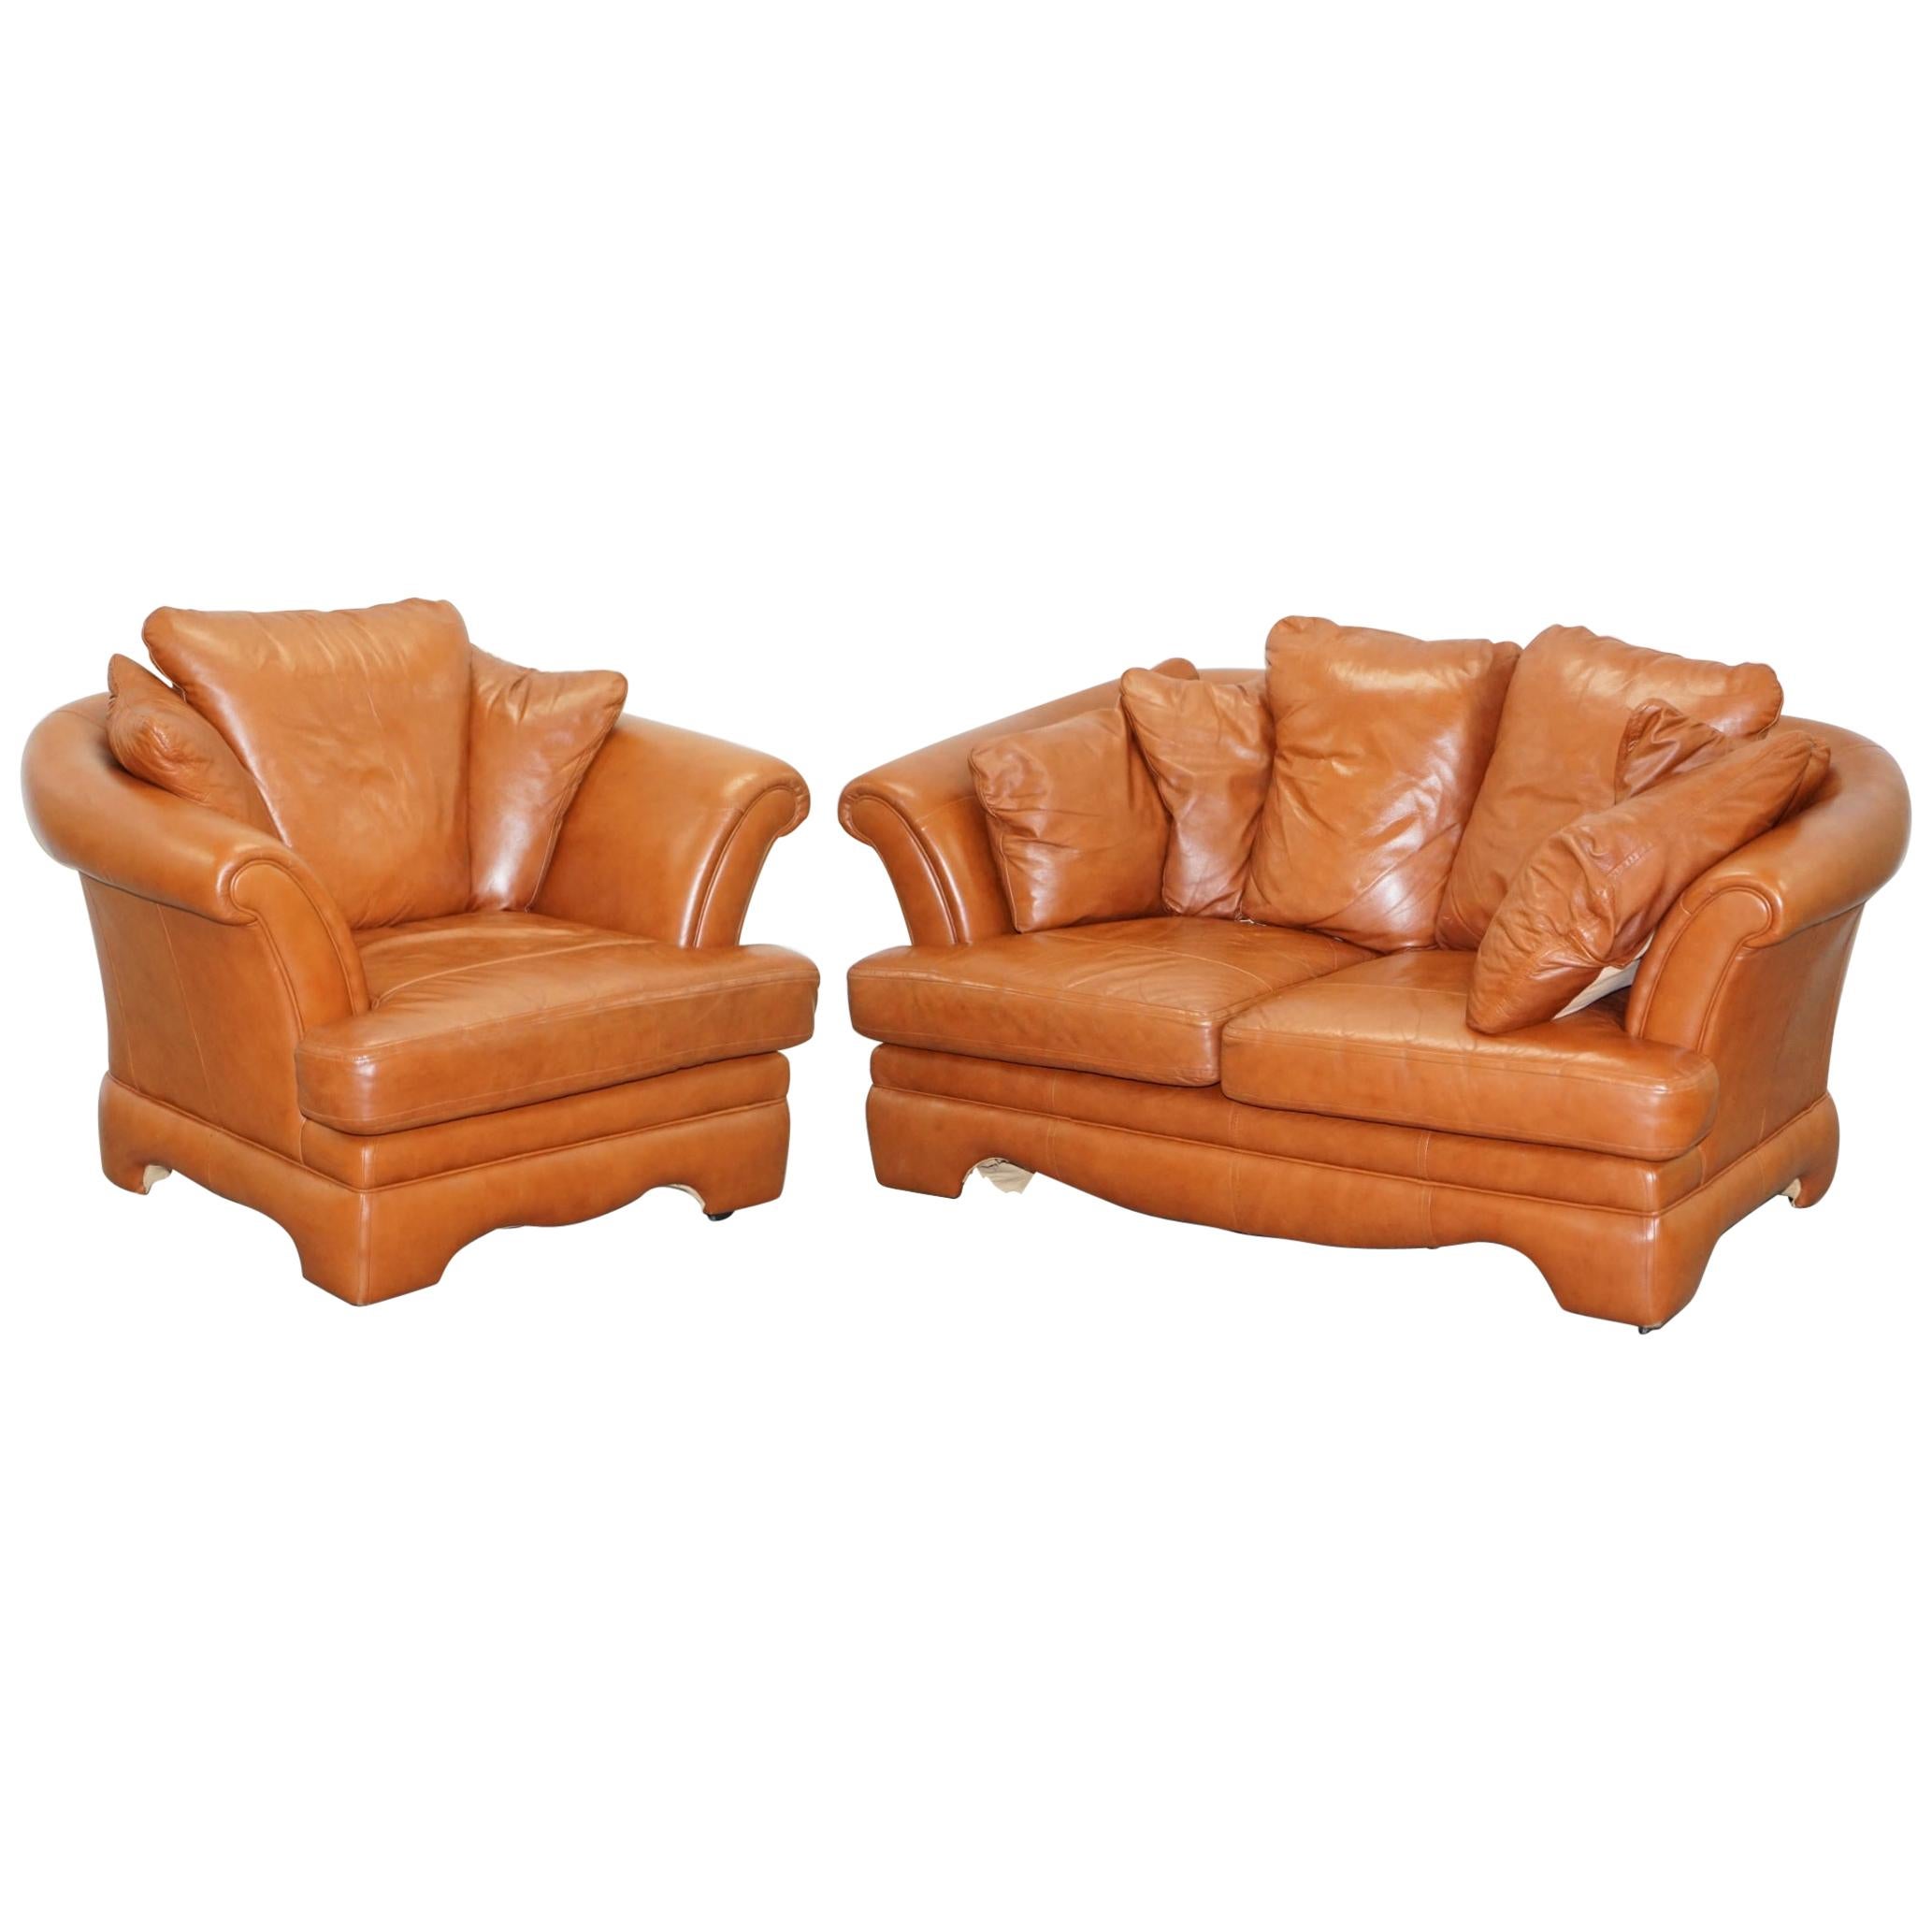 Ravissant petit canapé en cuir brun clair vieilli et ensemble de deux pièces de fauteuils assortis